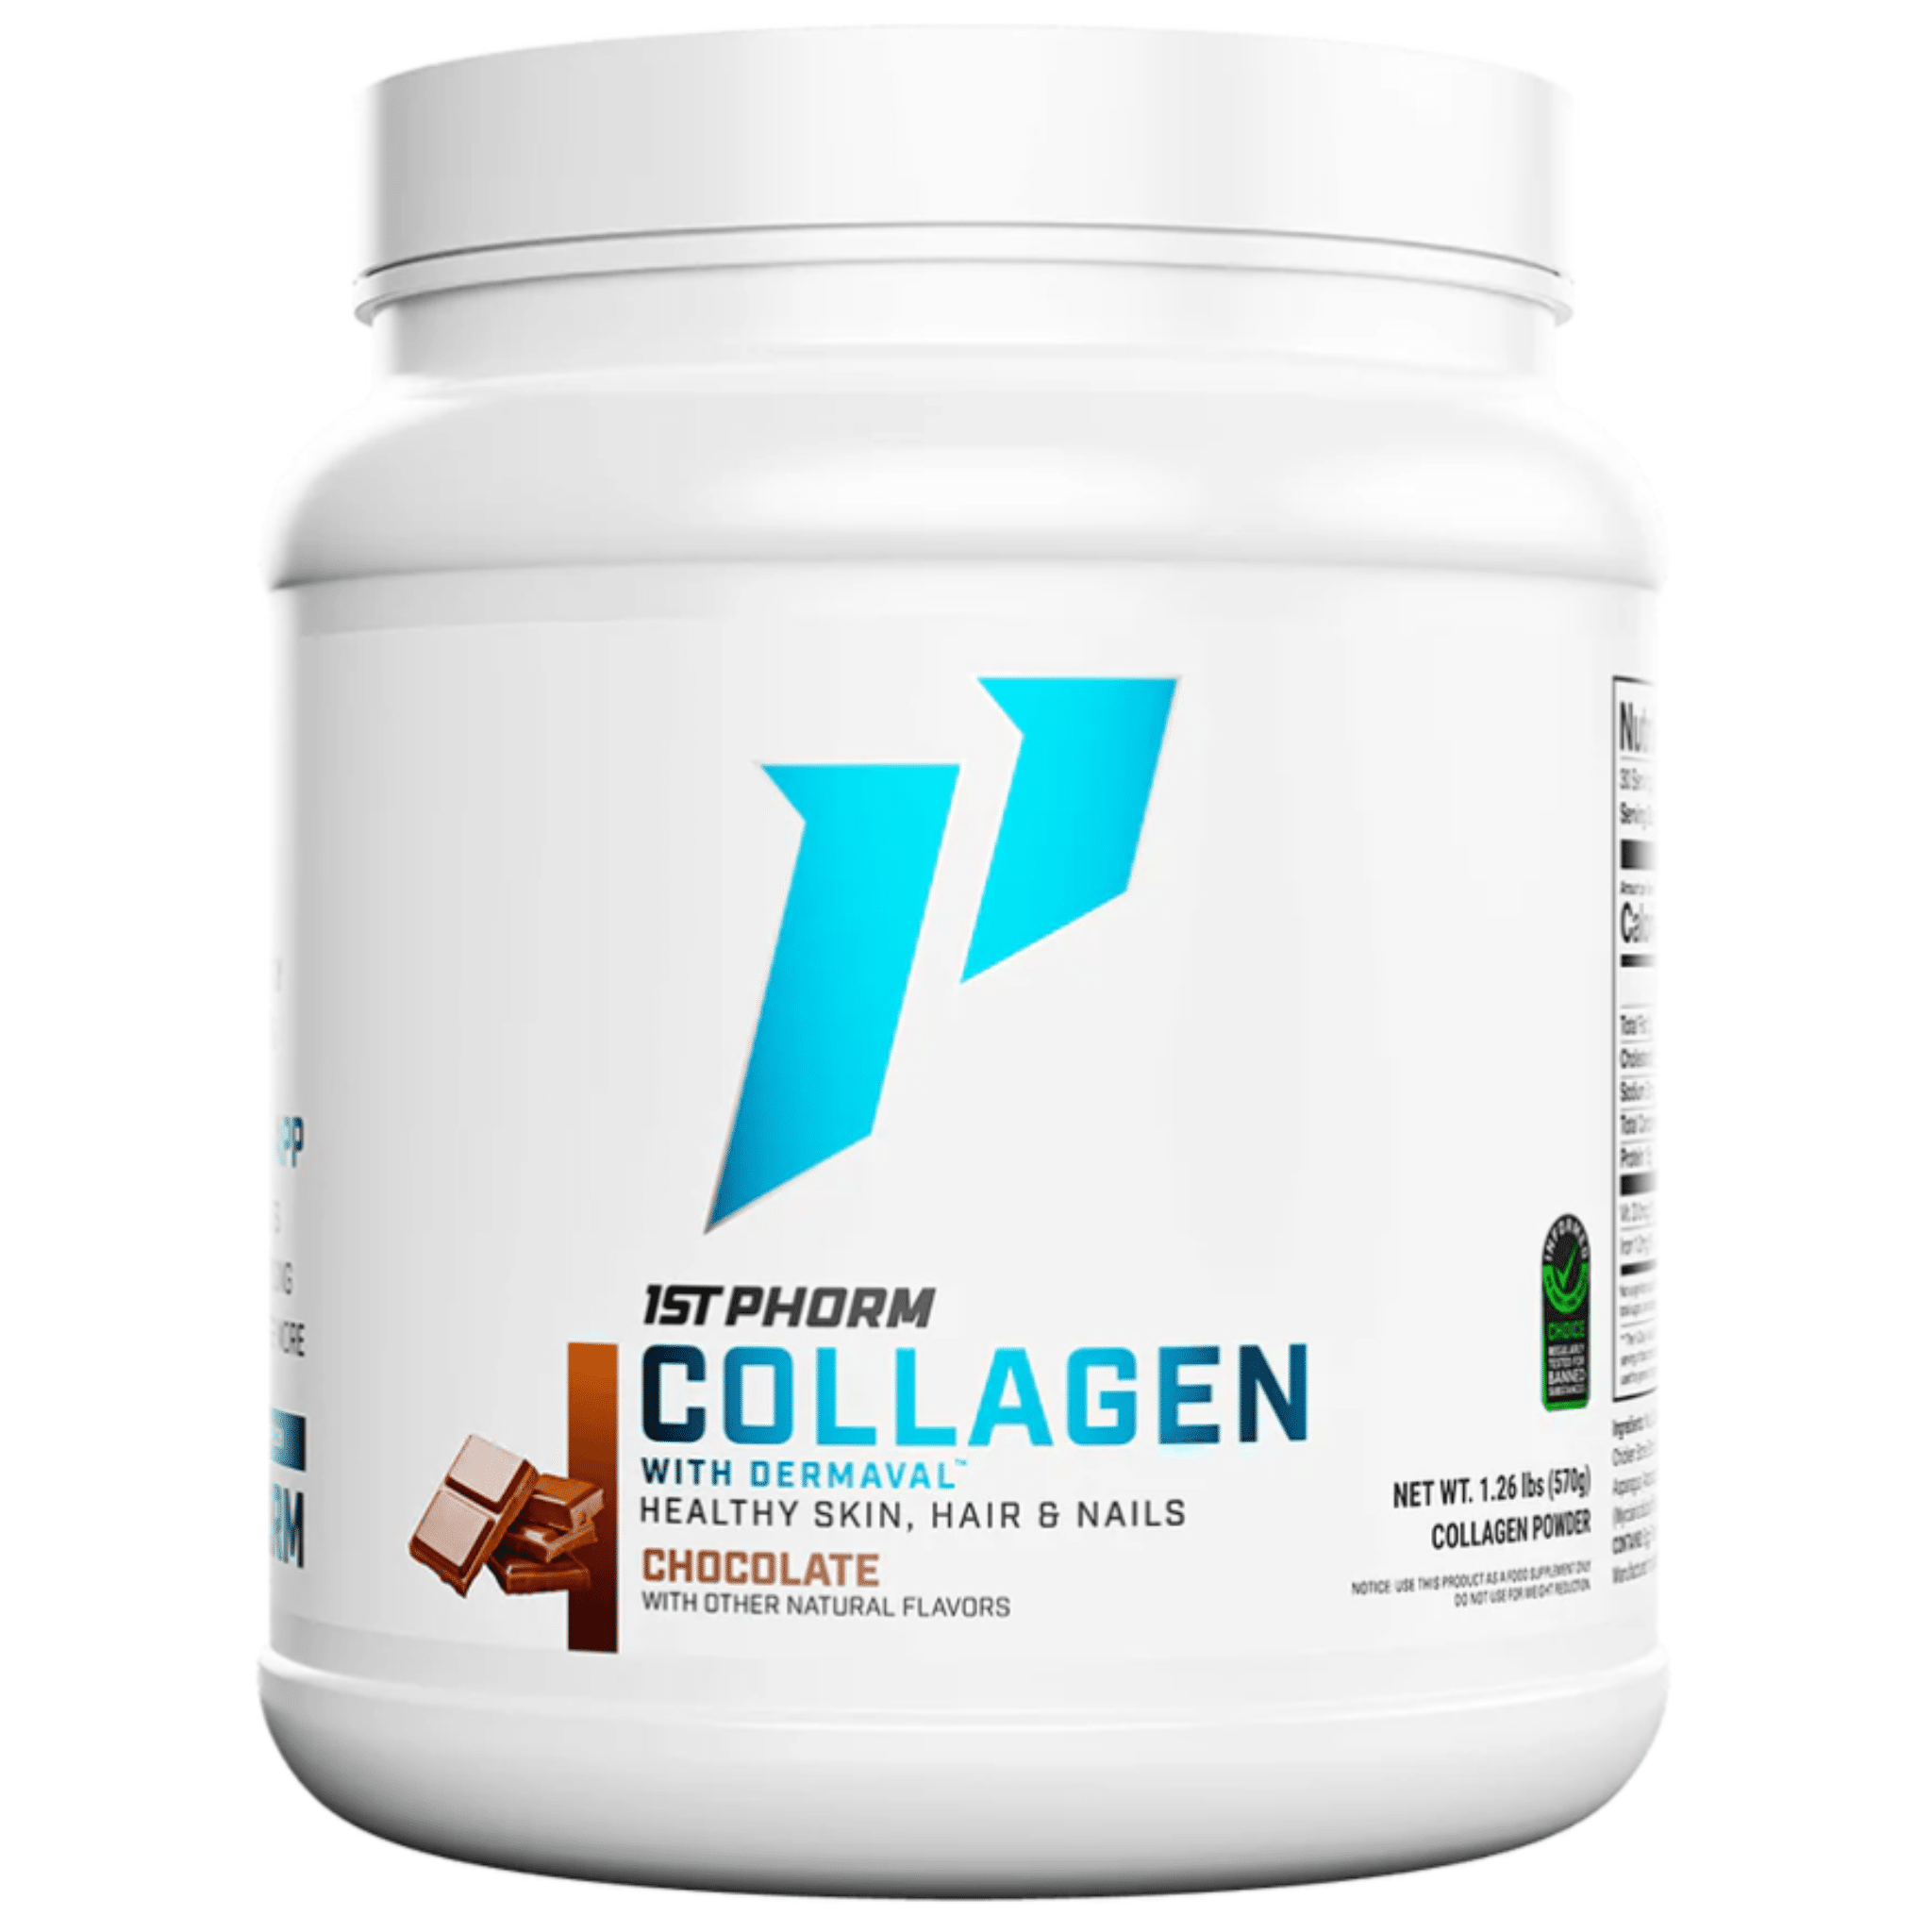 1st Phorm Collagen